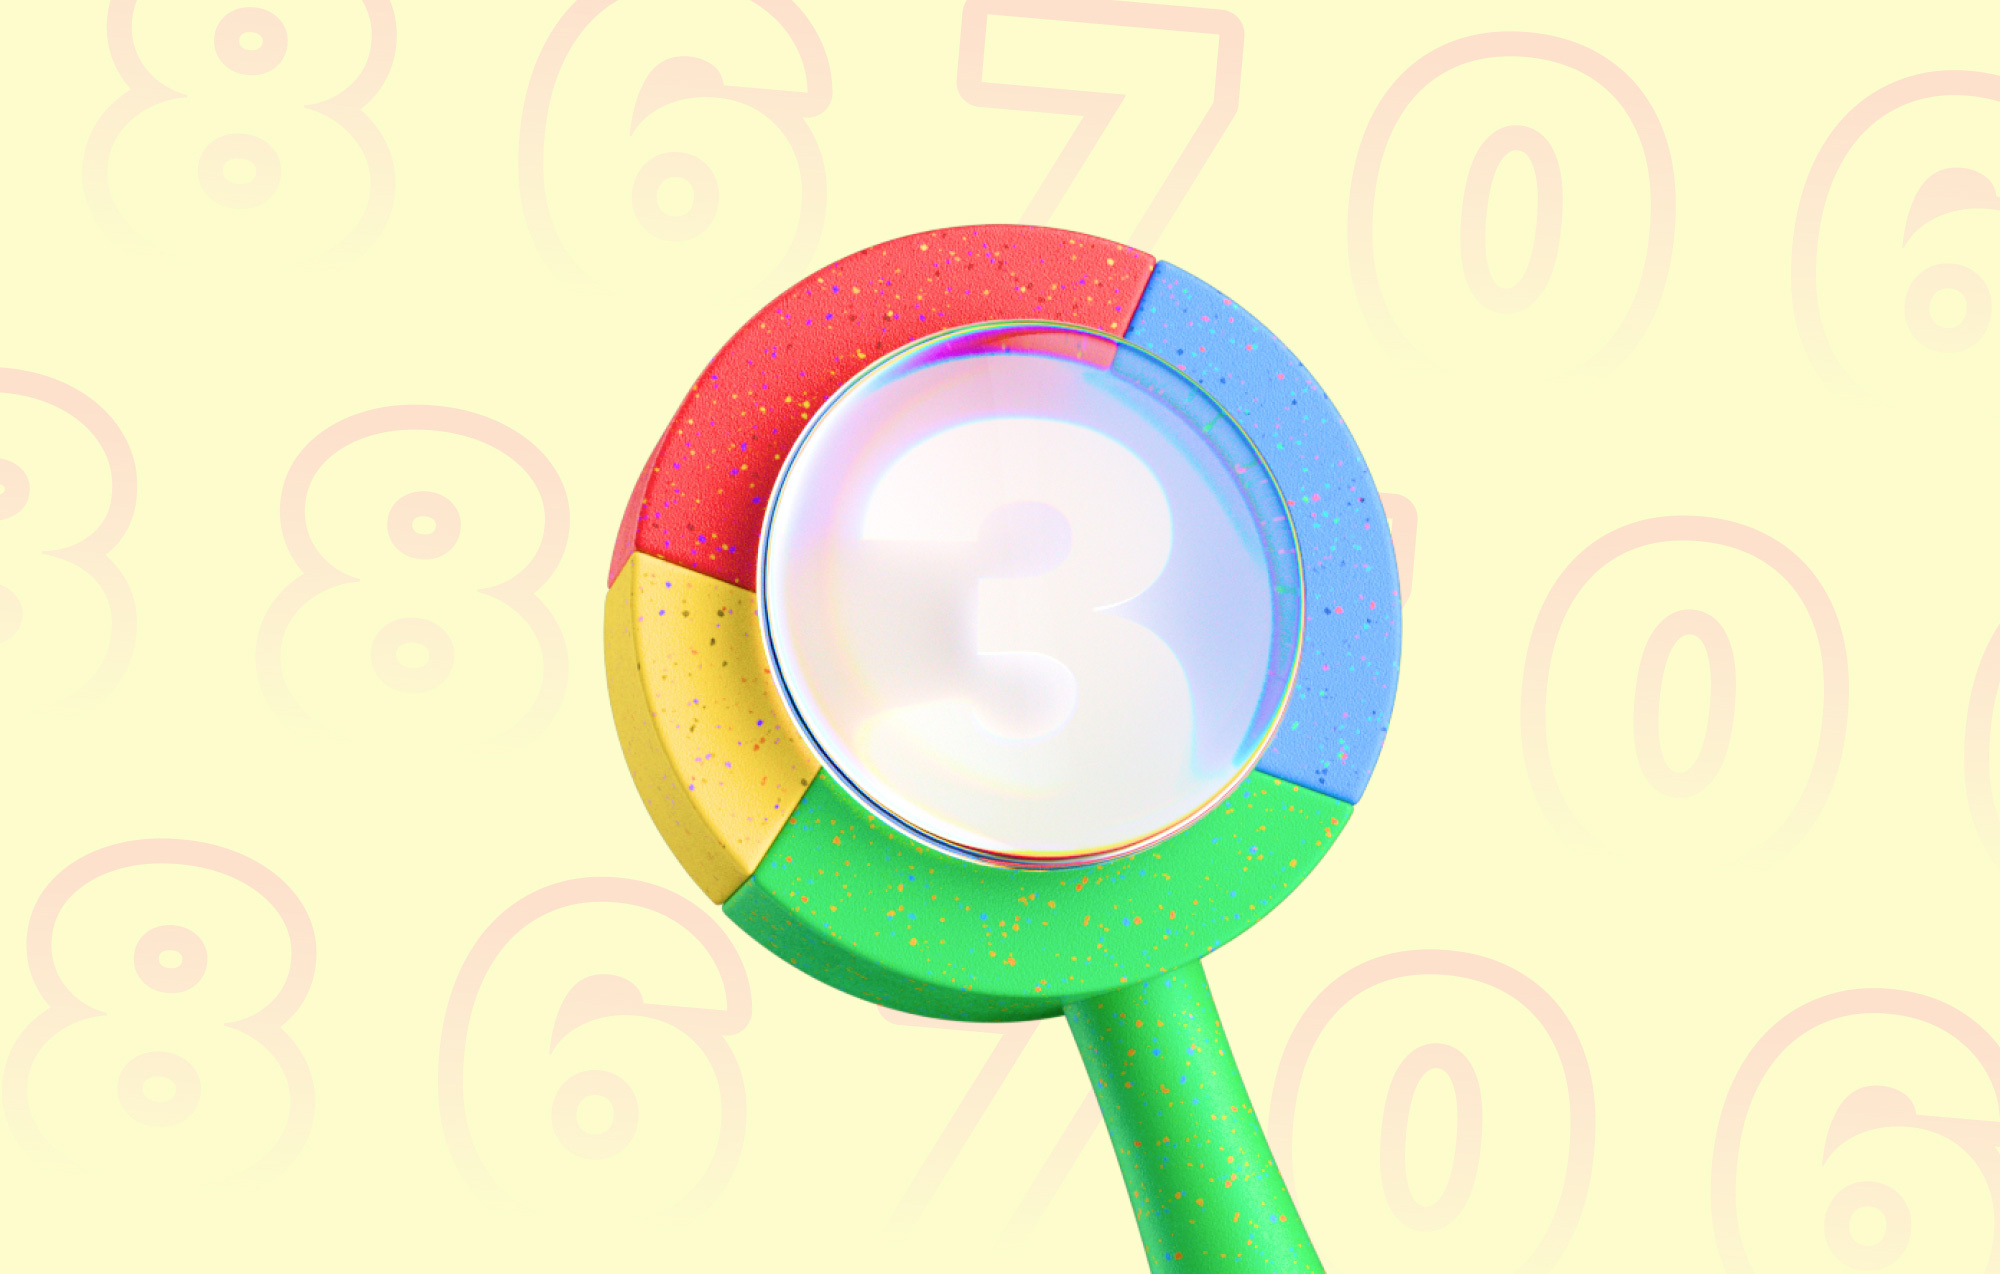  Immagine di intestazione per un articolo sul blog di Google Analytics: una lente d'ingrandimento nei colori del marchio Google che ingrandisce i numeri.